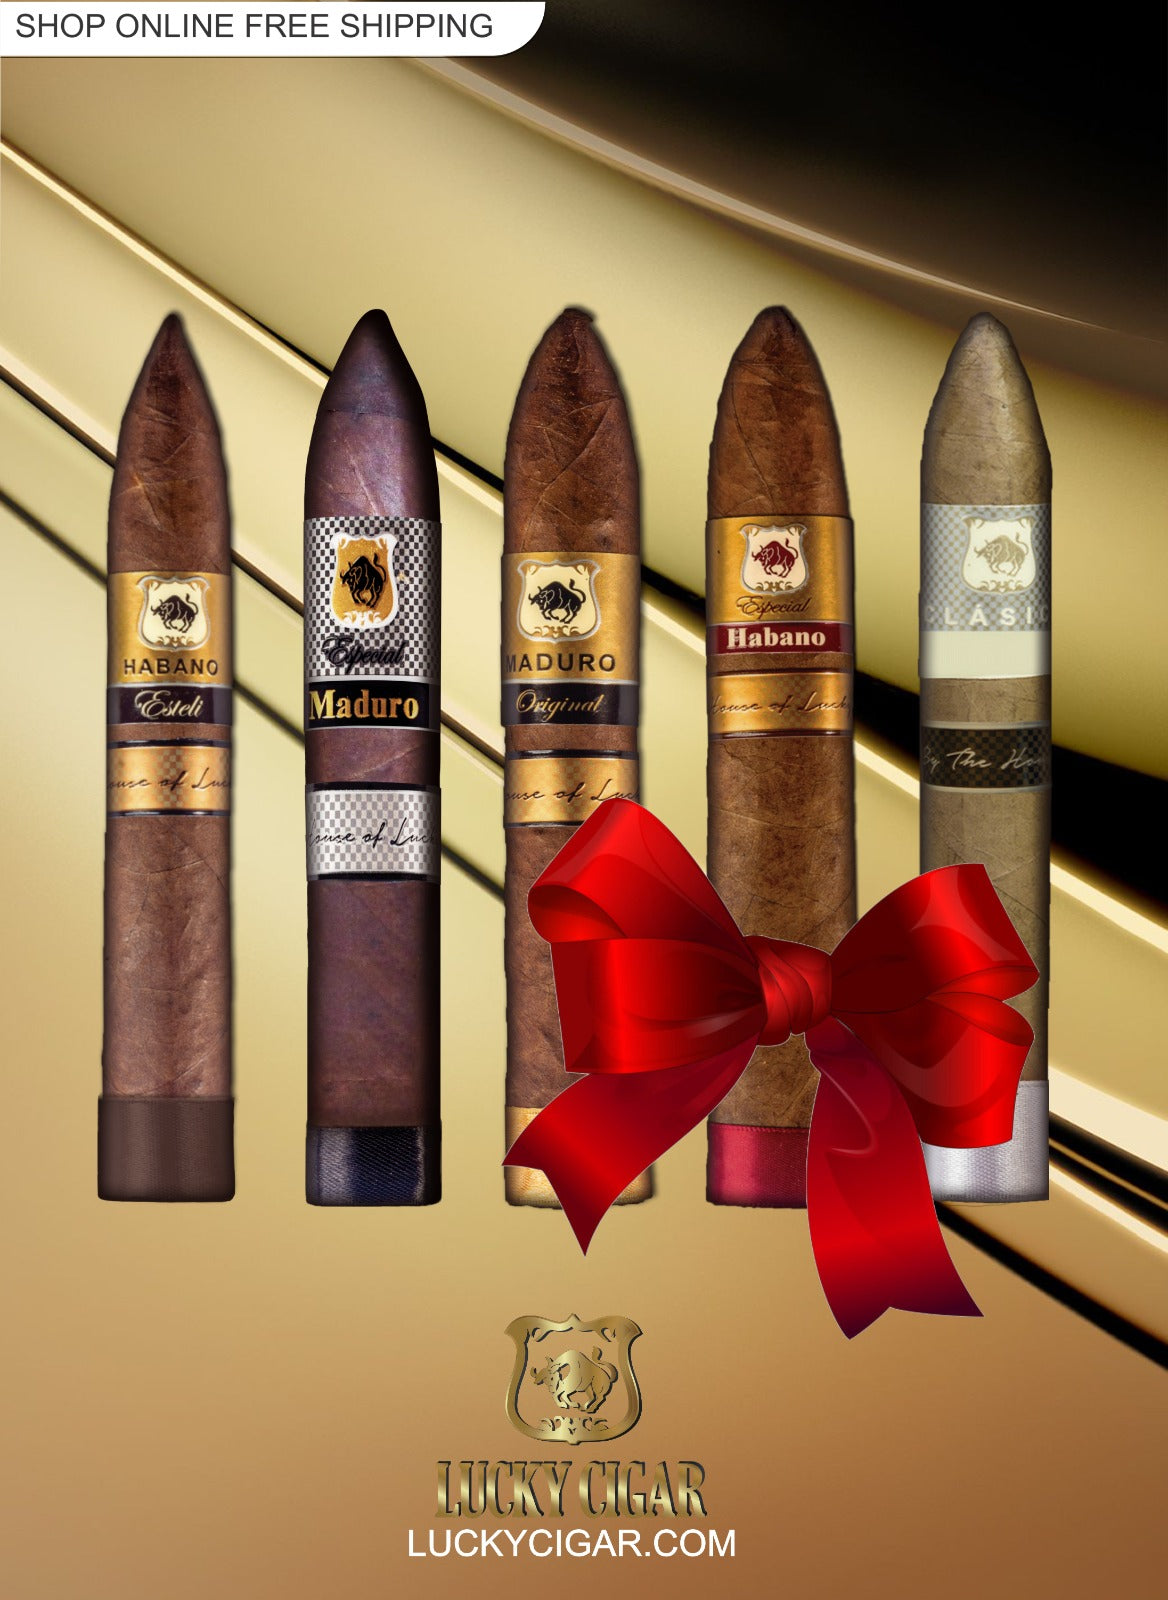 Lucky Cigar Sampler Sets: 5 Torpedo Cigars, Habano Esteli, Maduro Especial, Maduro Original, Classico 